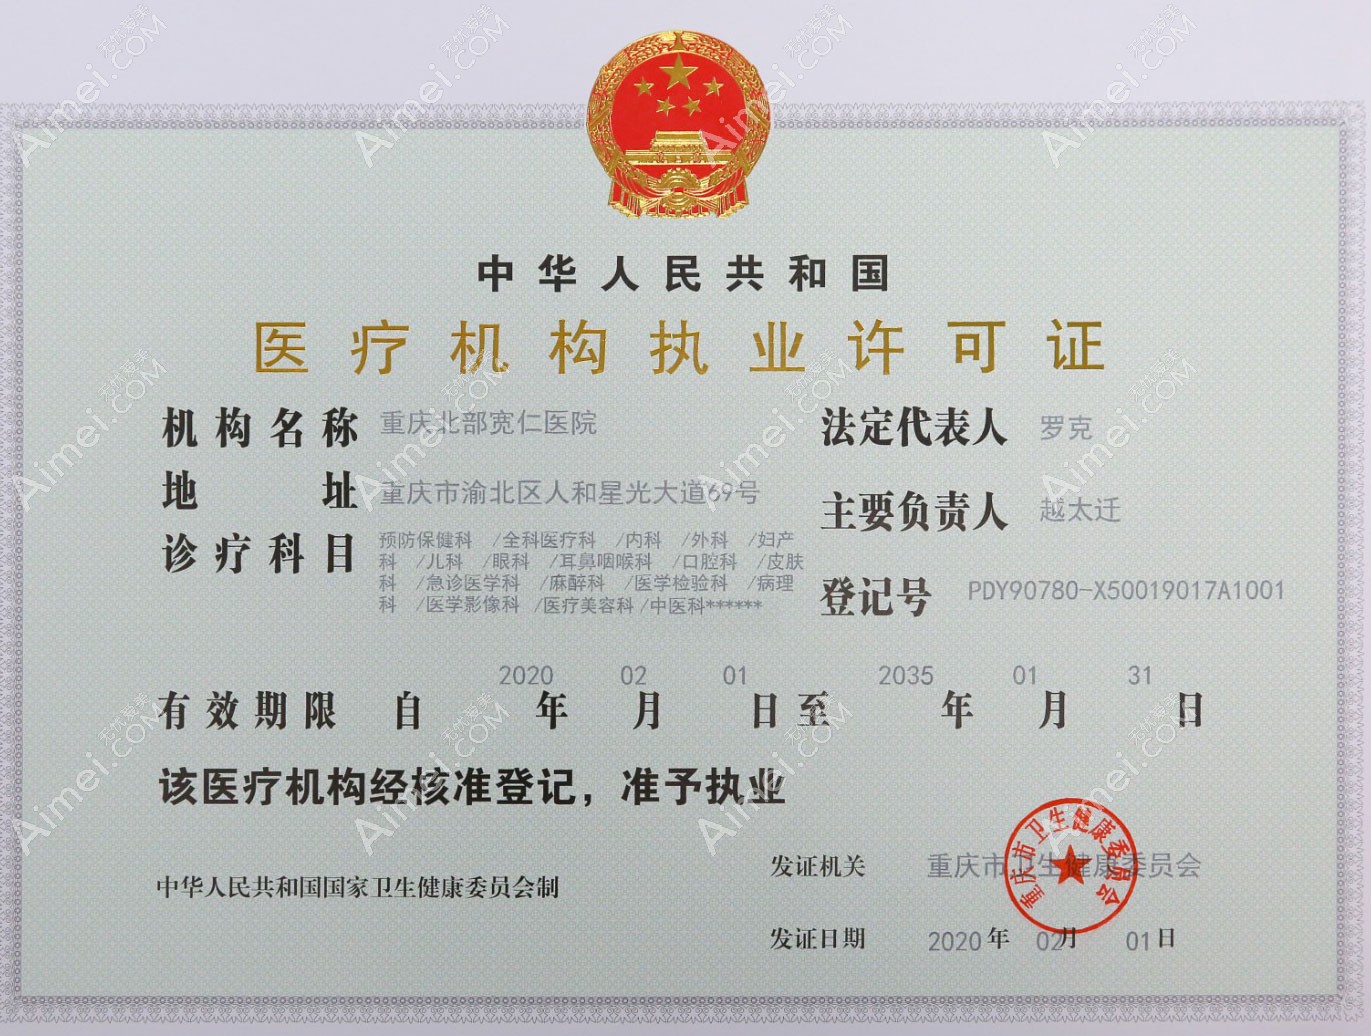 重庆北部宽仁医院医疗机构执业许可证